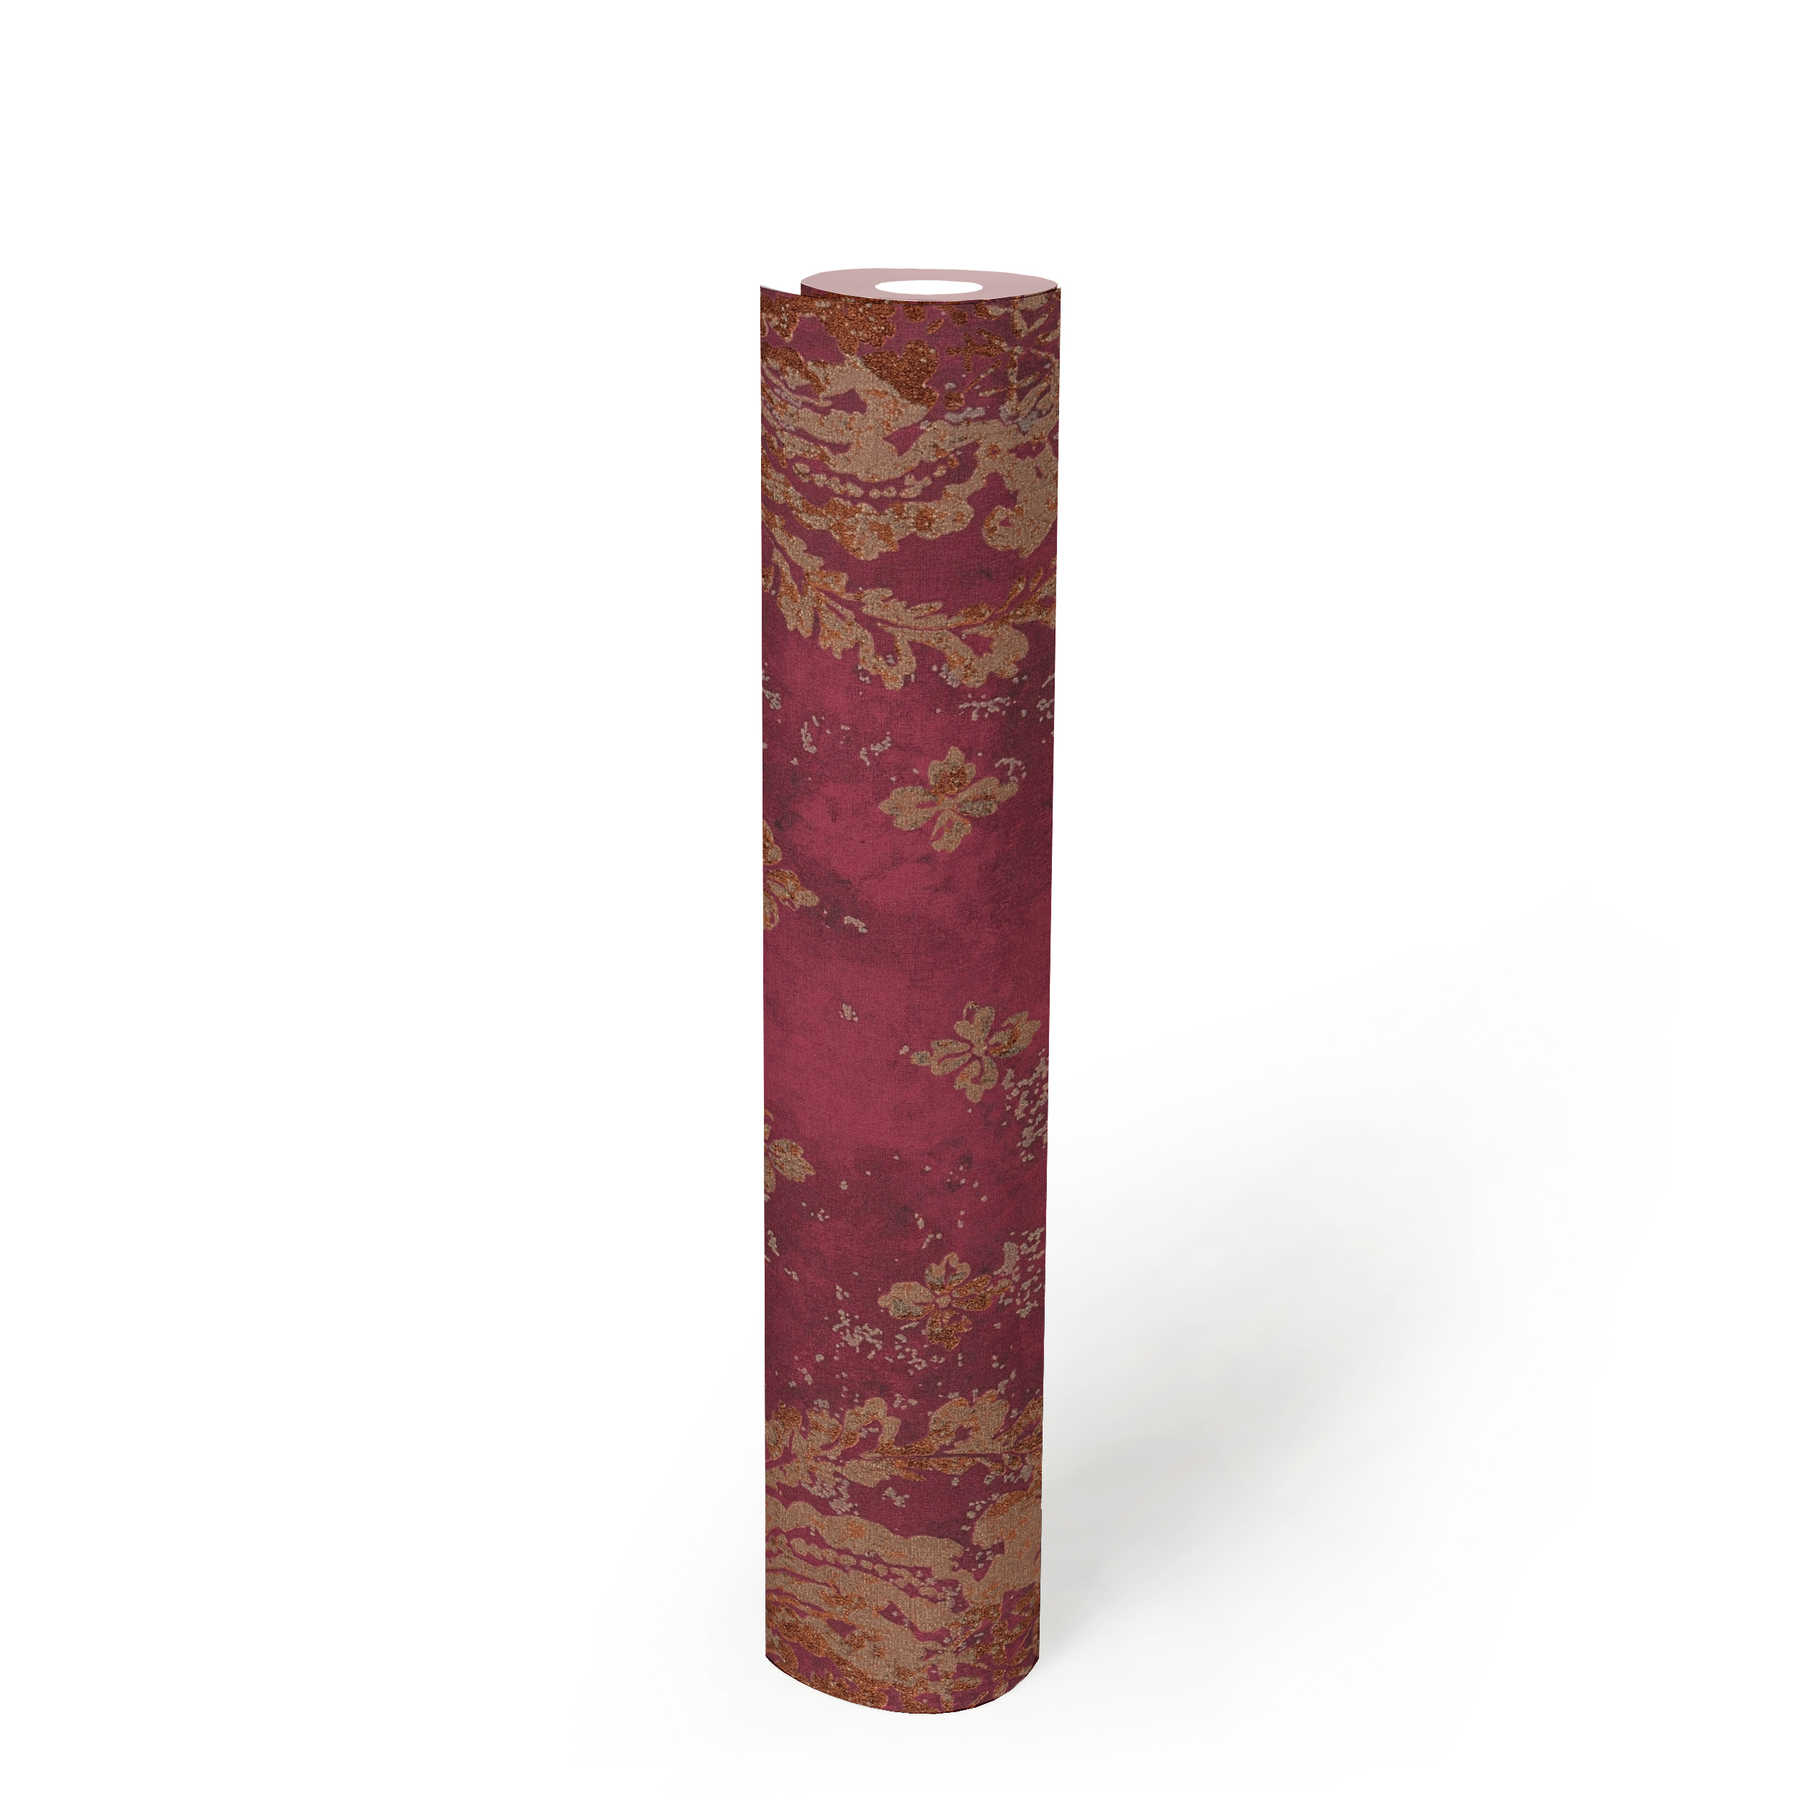             Papier peint bordeaux avec ornements de style boho - métallique, rouge
        